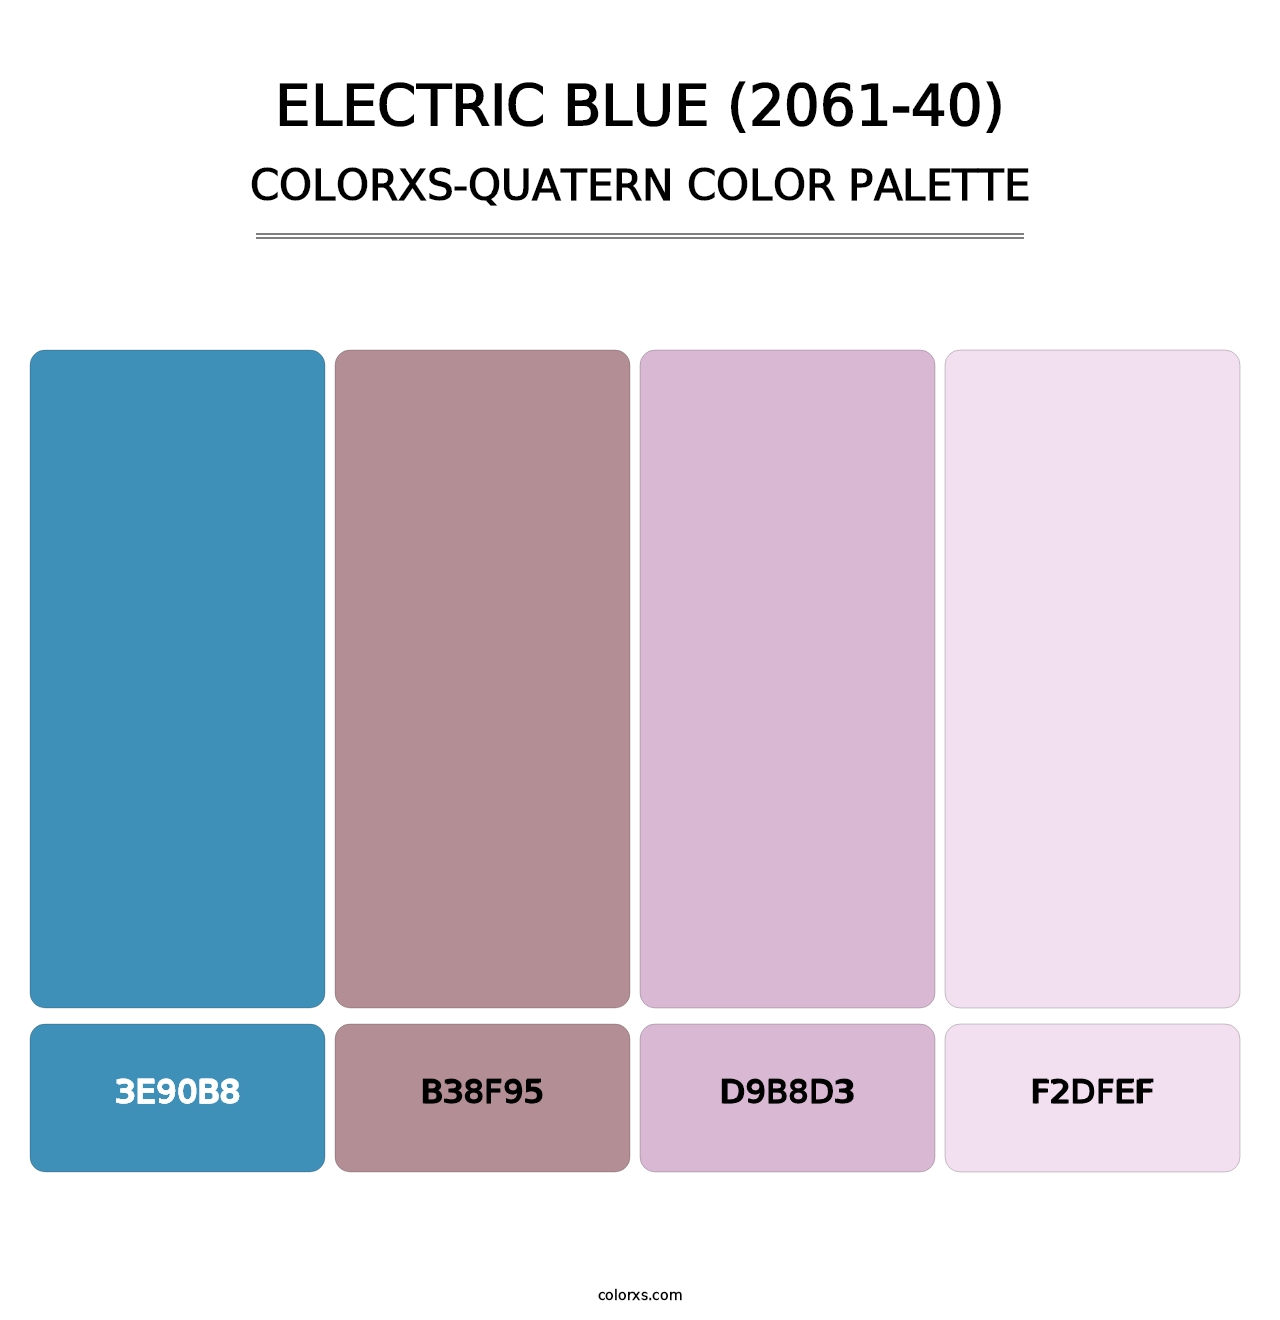 Electric Blue (2061-40) - Colorxs Quatern Palette